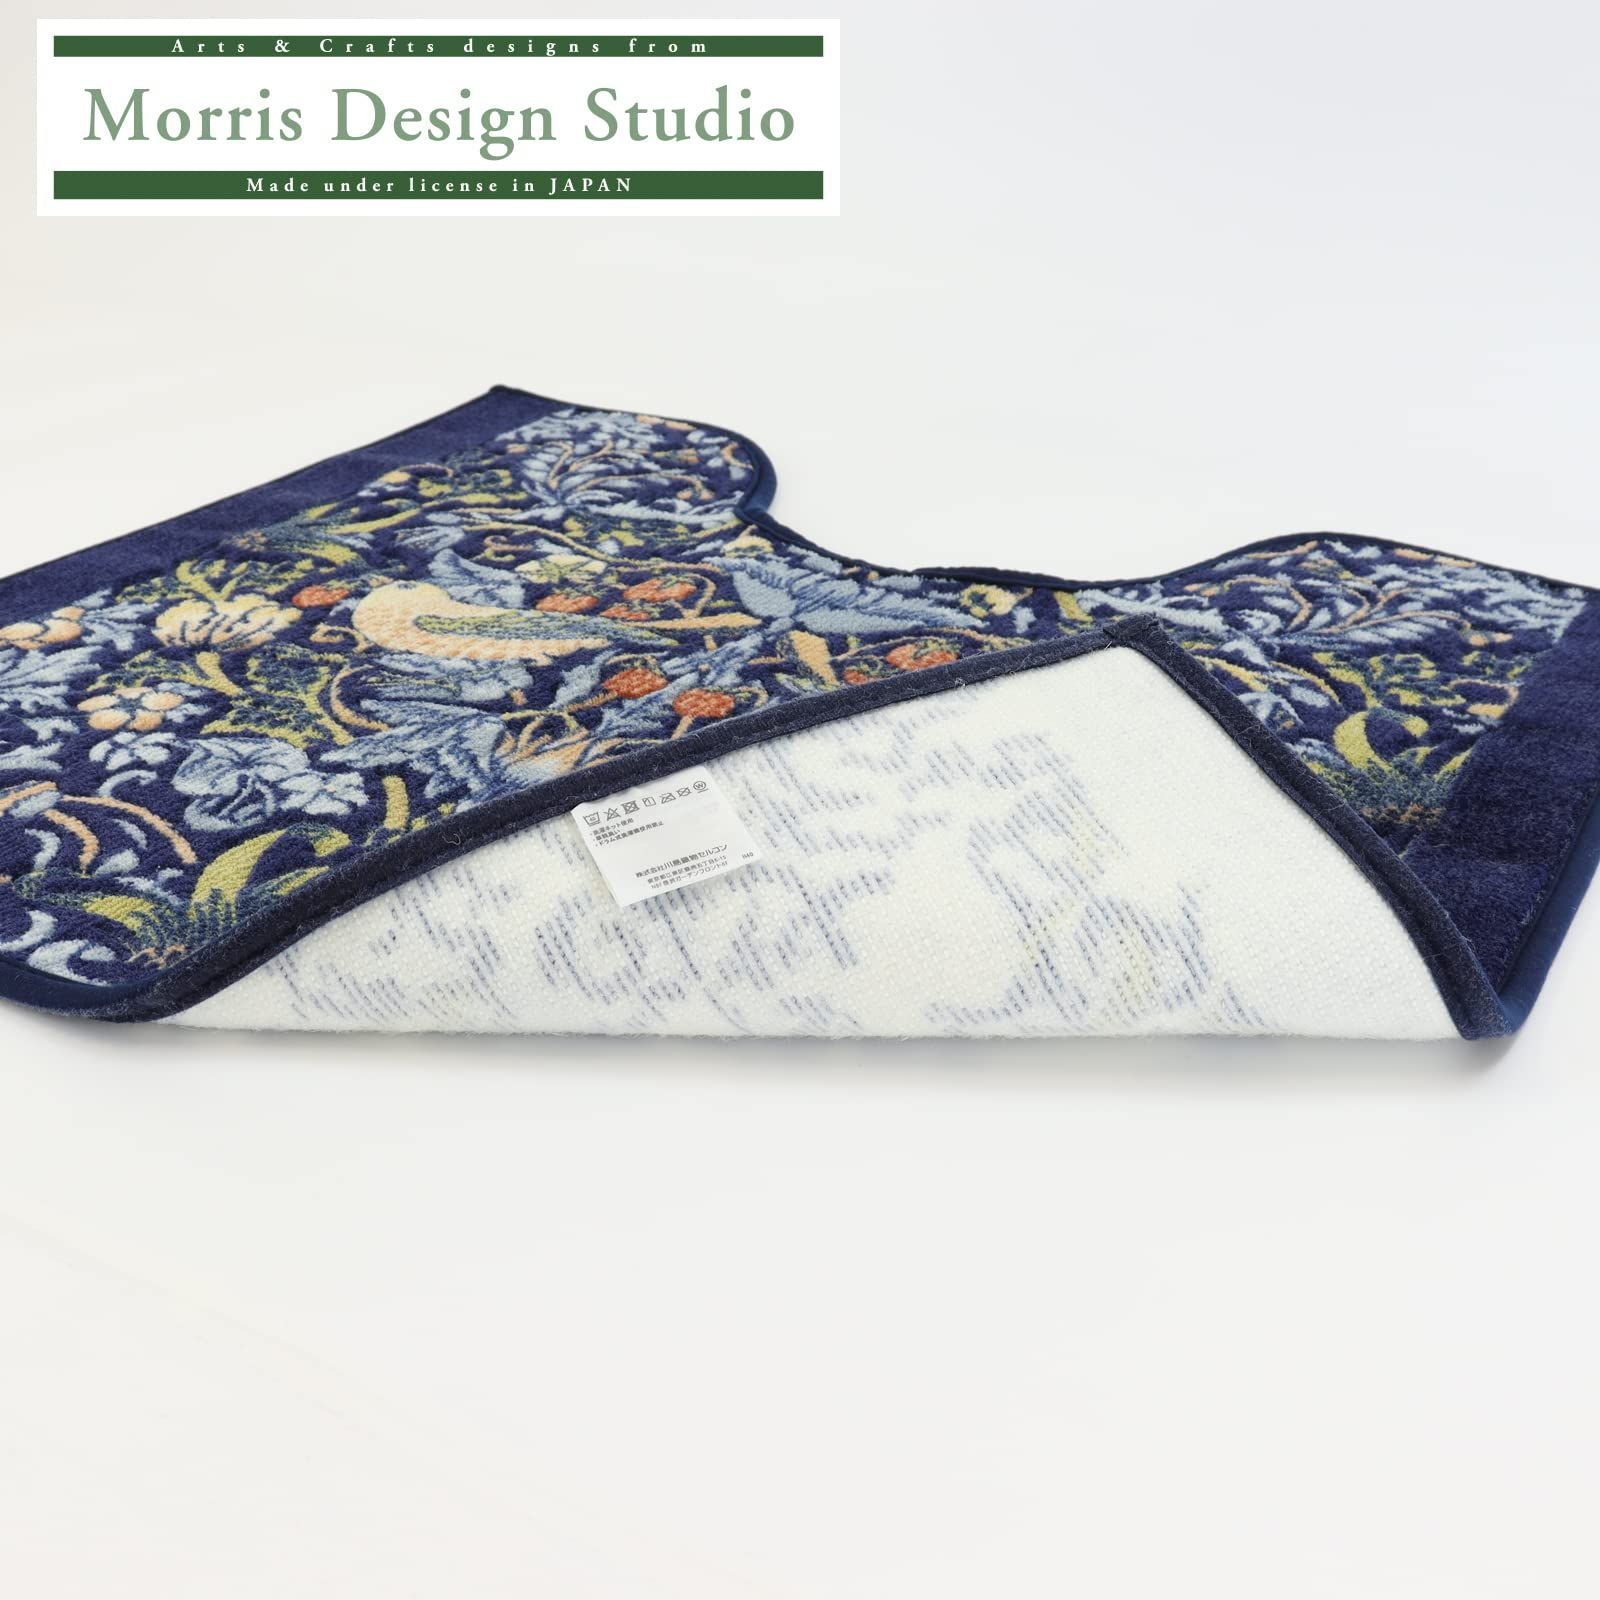 川島織物セルコン Morris Design studio モリスデザインスタジオ トイレマット いちご泥棒 ブルー 80×65cm FT1702A 日本製